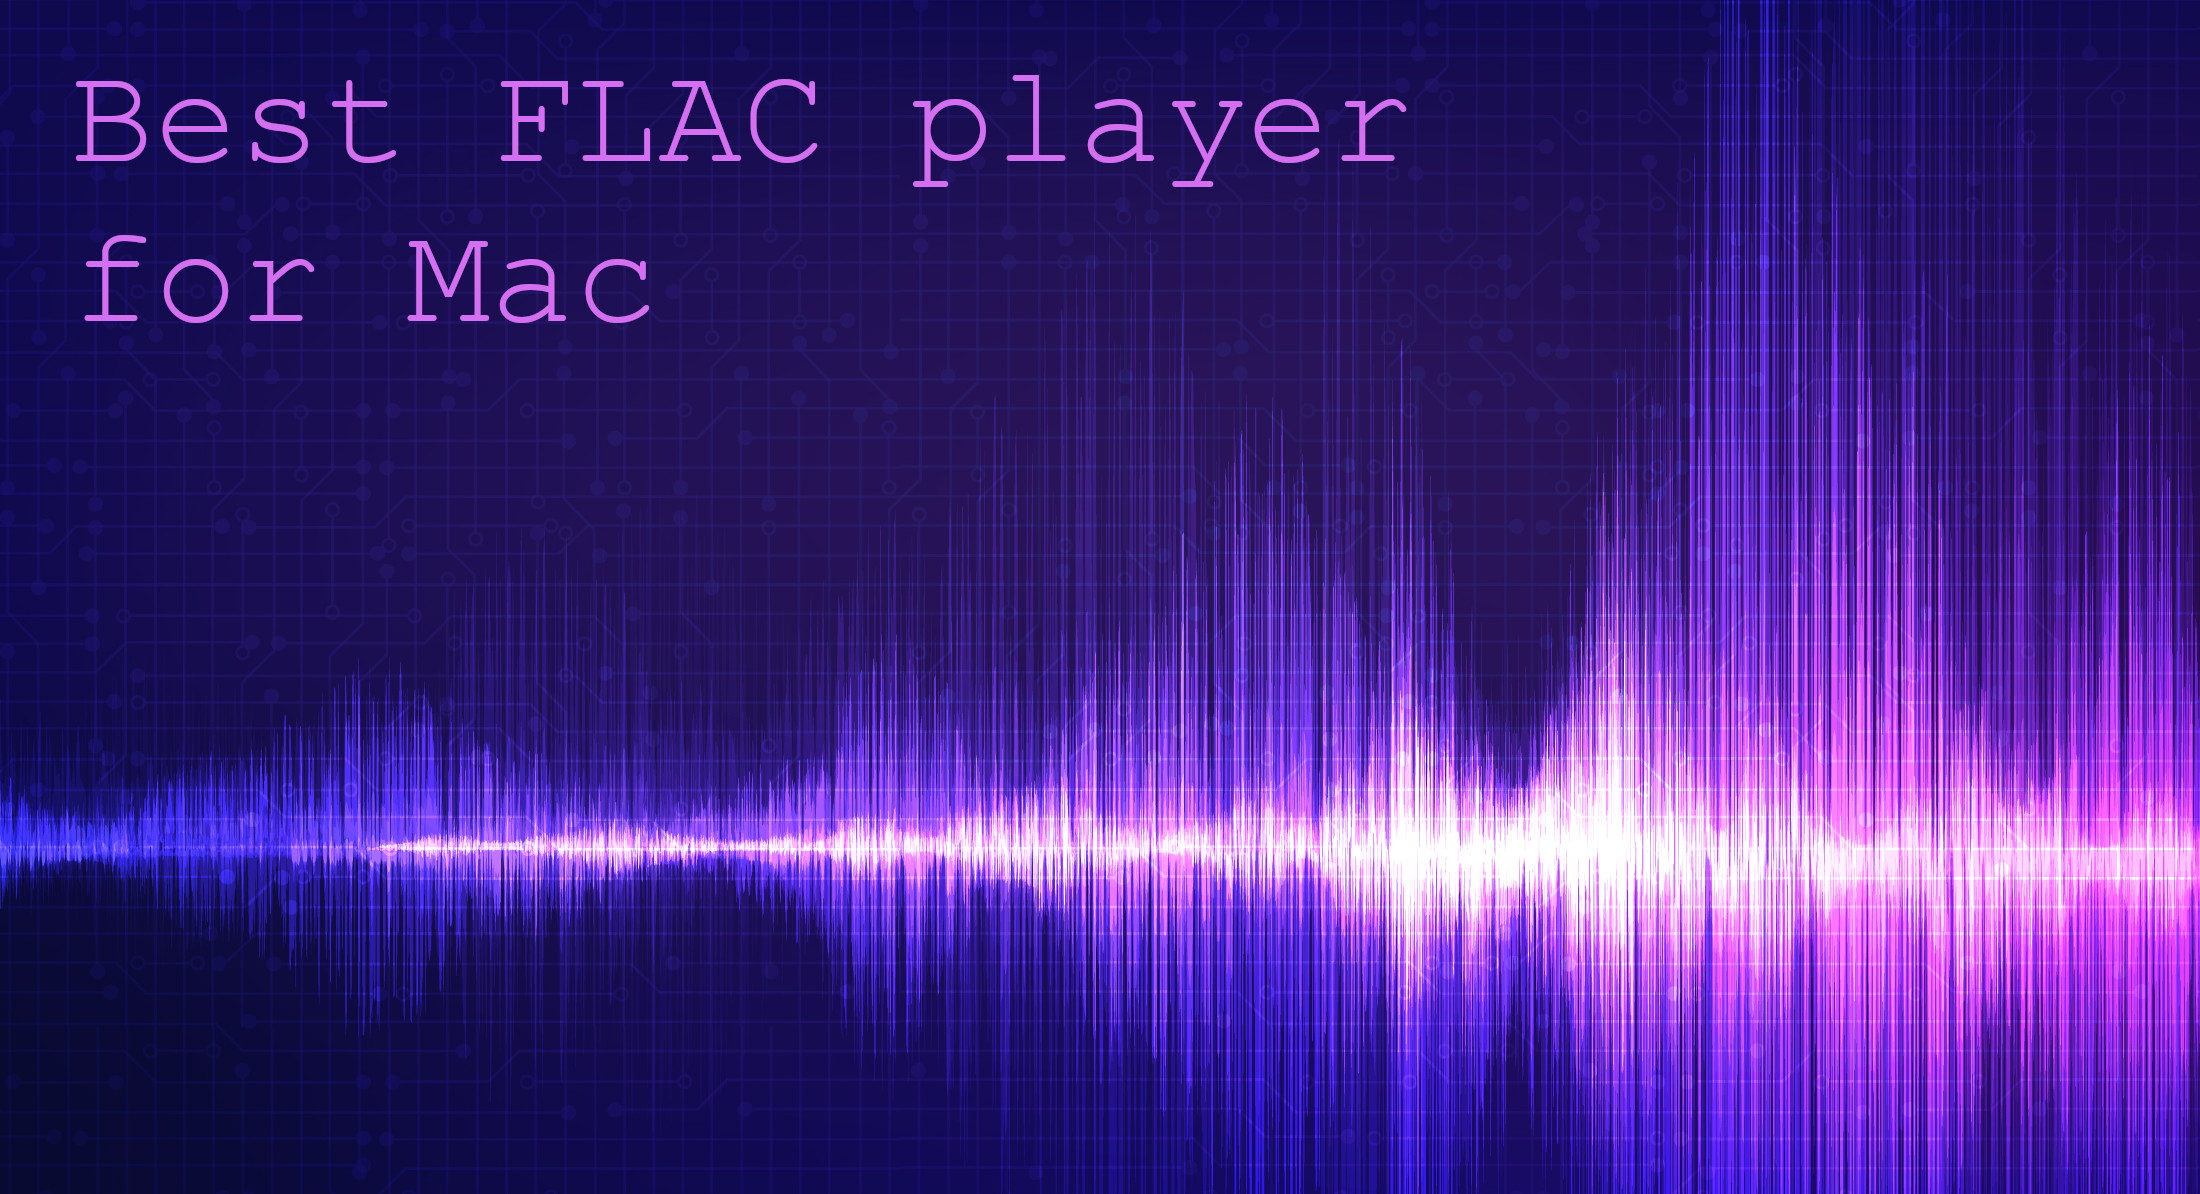 Bester Flac-Player für Mac